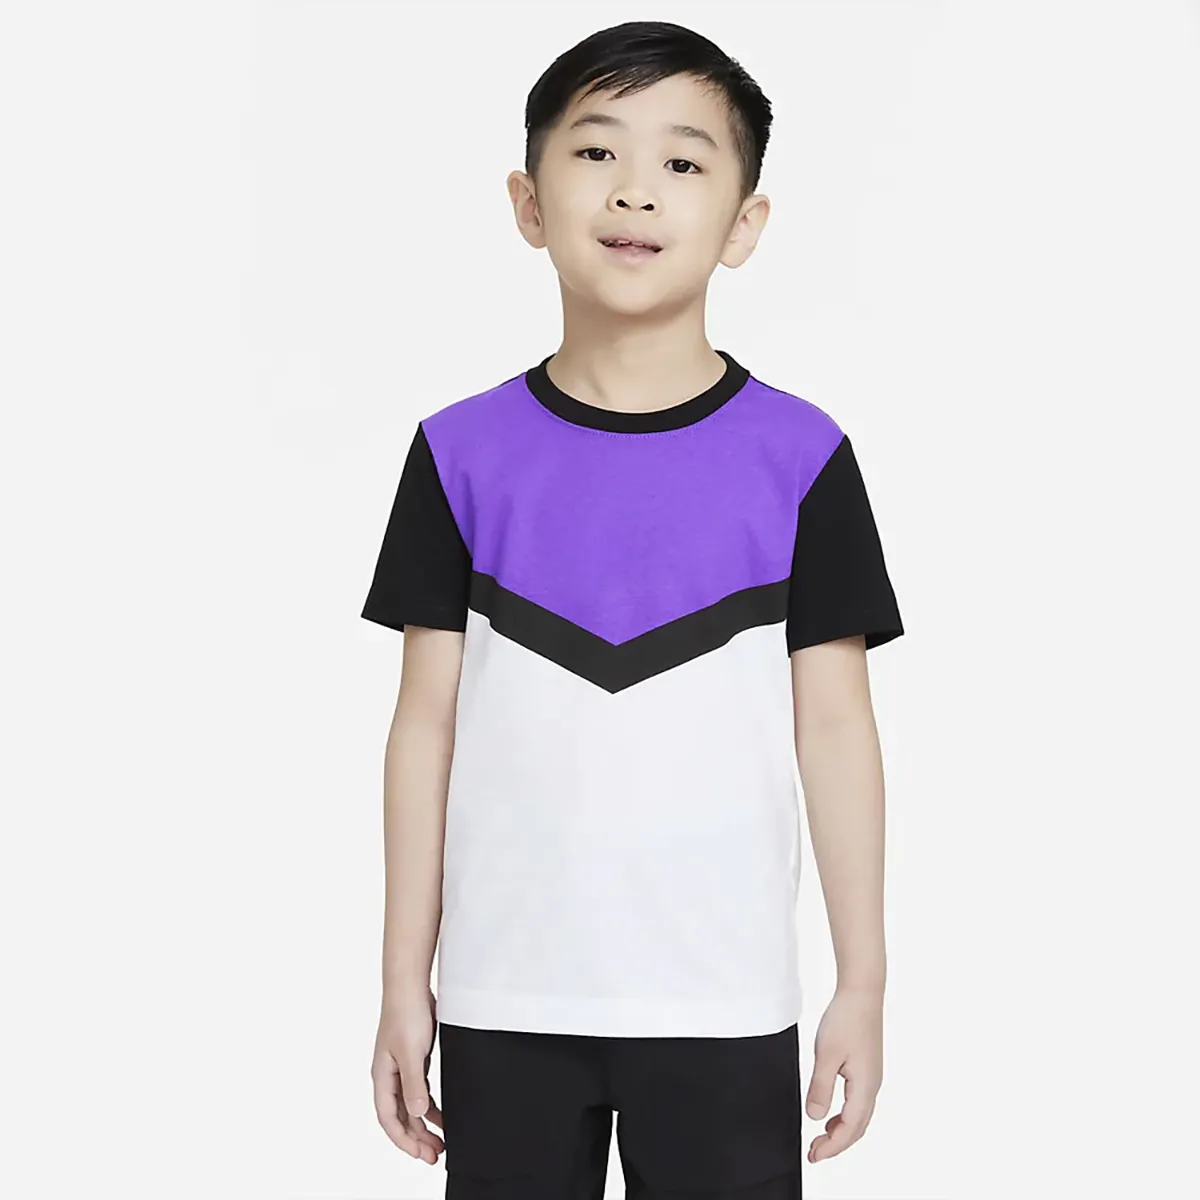 Оптовая продажа Мягкая сенсорный Детская футболка с цветными рукавами модель полиэстер бланковые цветные футболка для детей с рисунком из RB-1801B